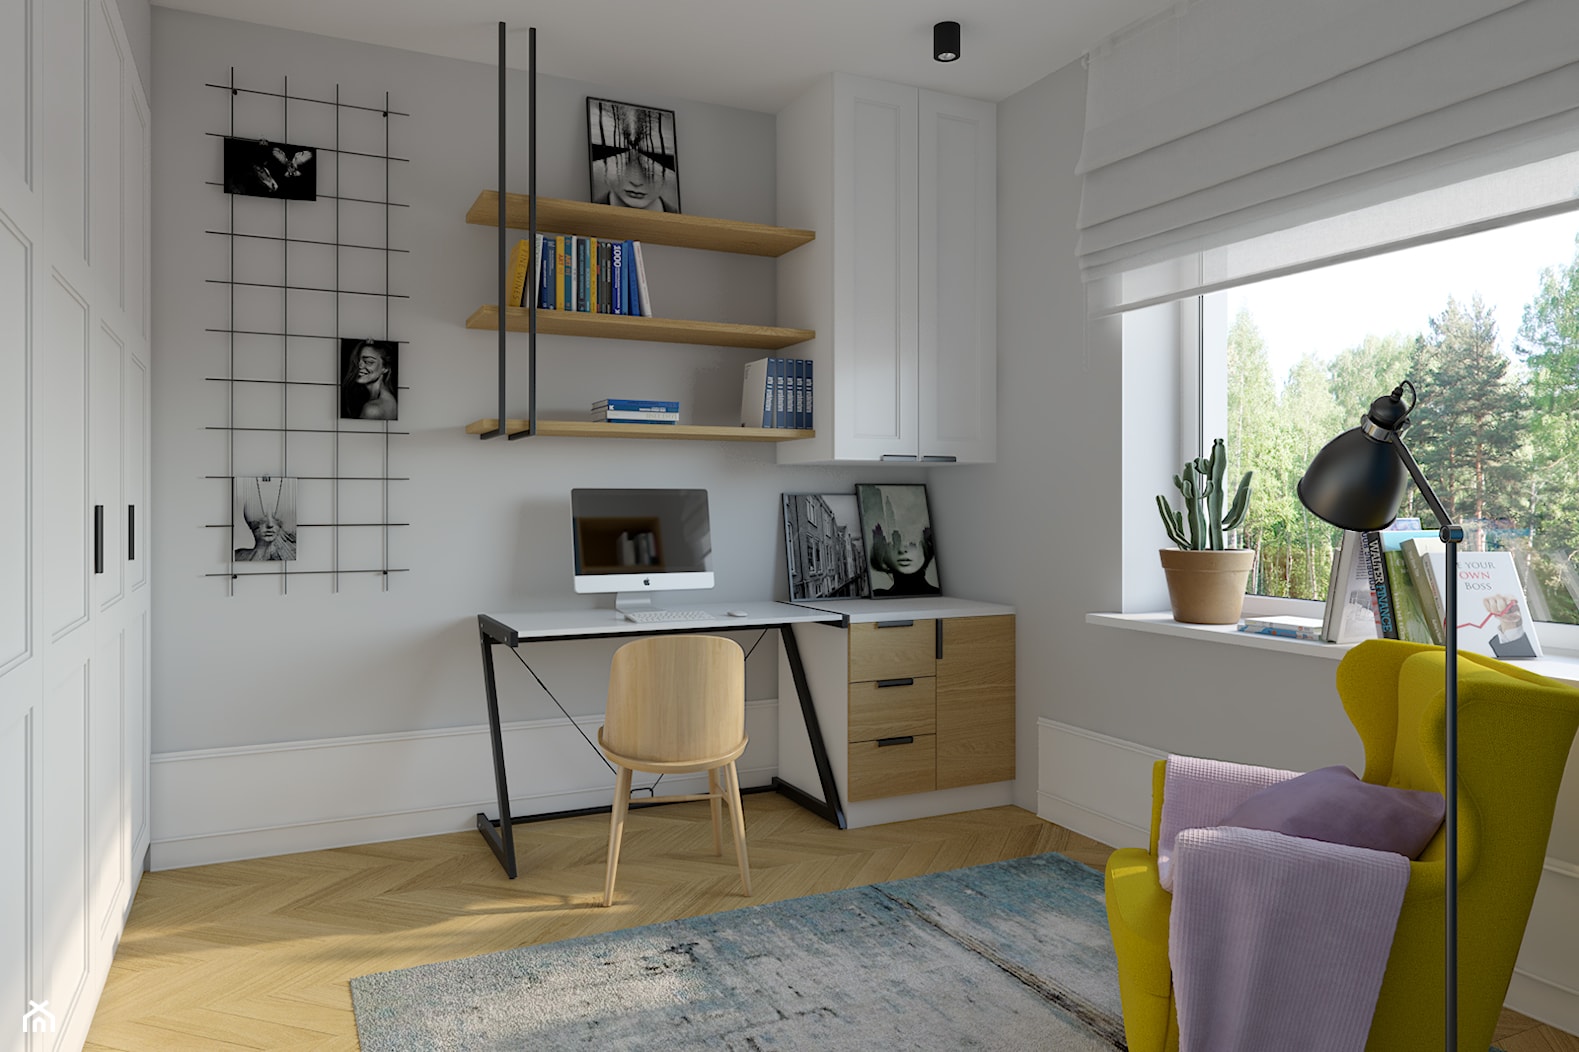 Gabinet domowy 12m2 - Biuro, styl nowoczesny - zdjęcie od KDK Design - Homebook